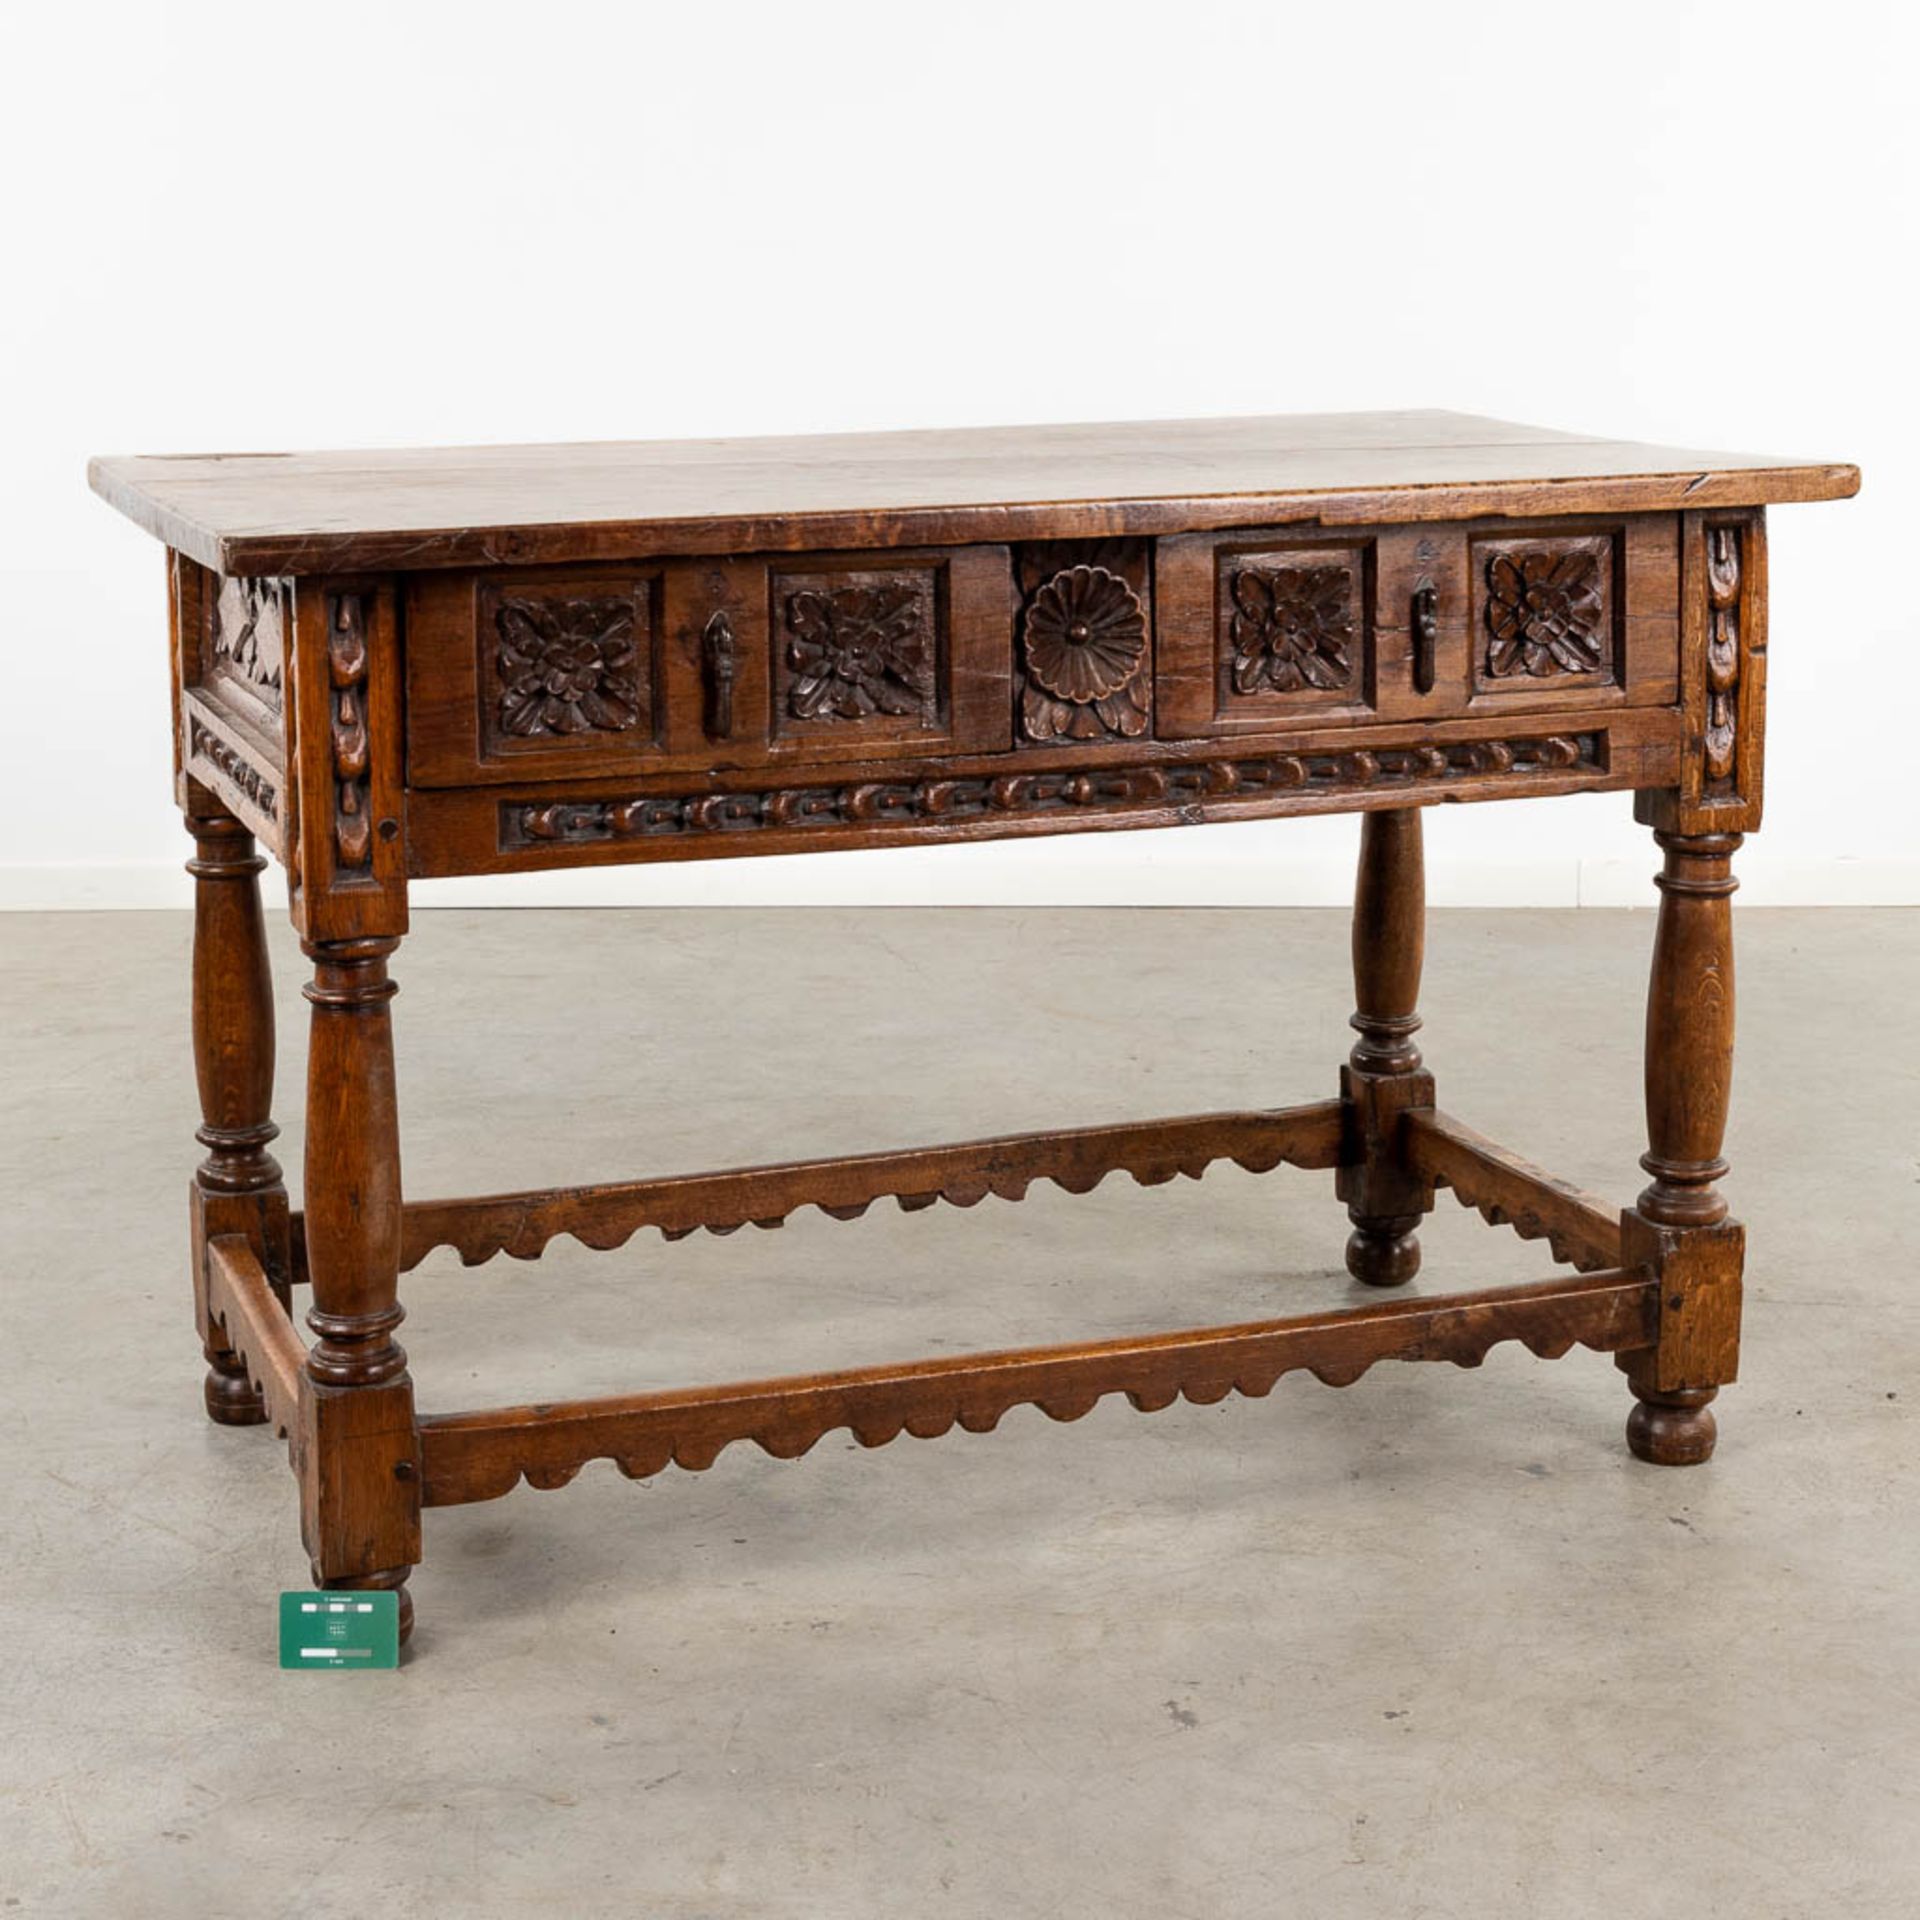 An antique "Table De Milieu", sculptured wood. Spain, 18th C. (D:72 x W:127 x H:82 cm) - Image 2 of 13